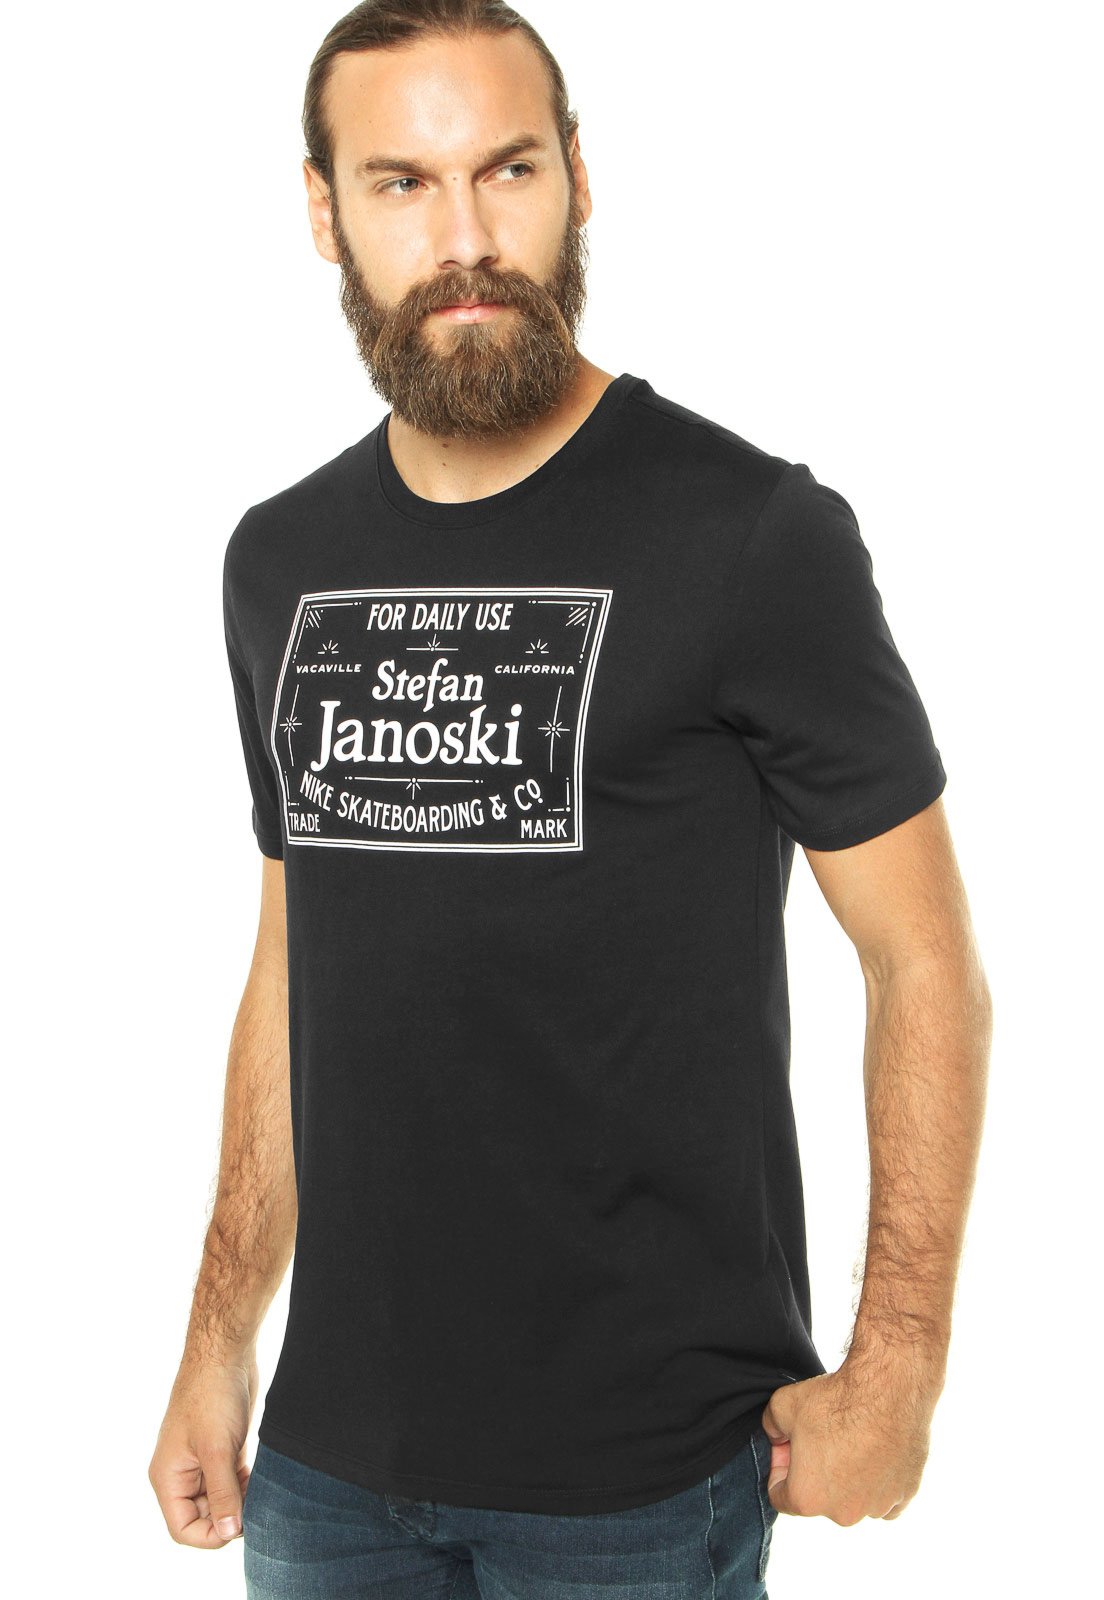 Lo anterior Escudero engañar Camiseta Nike Sb Df Janoski Label Tee Preta - Compre Agora | Kanui Brasil